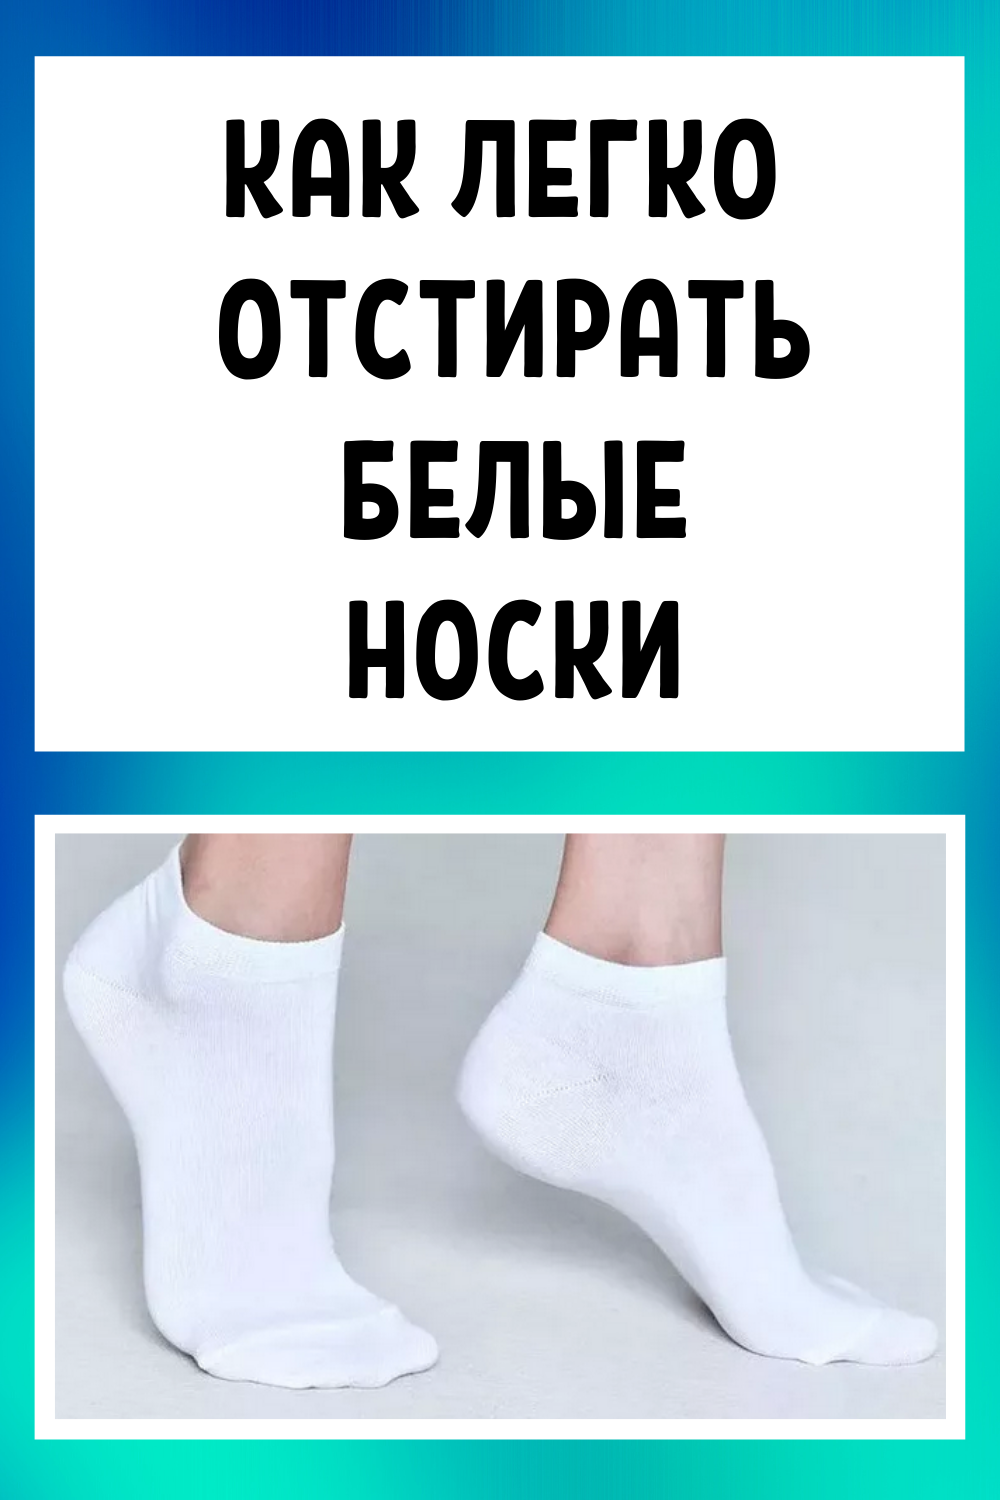 Особенности стирки белых носков